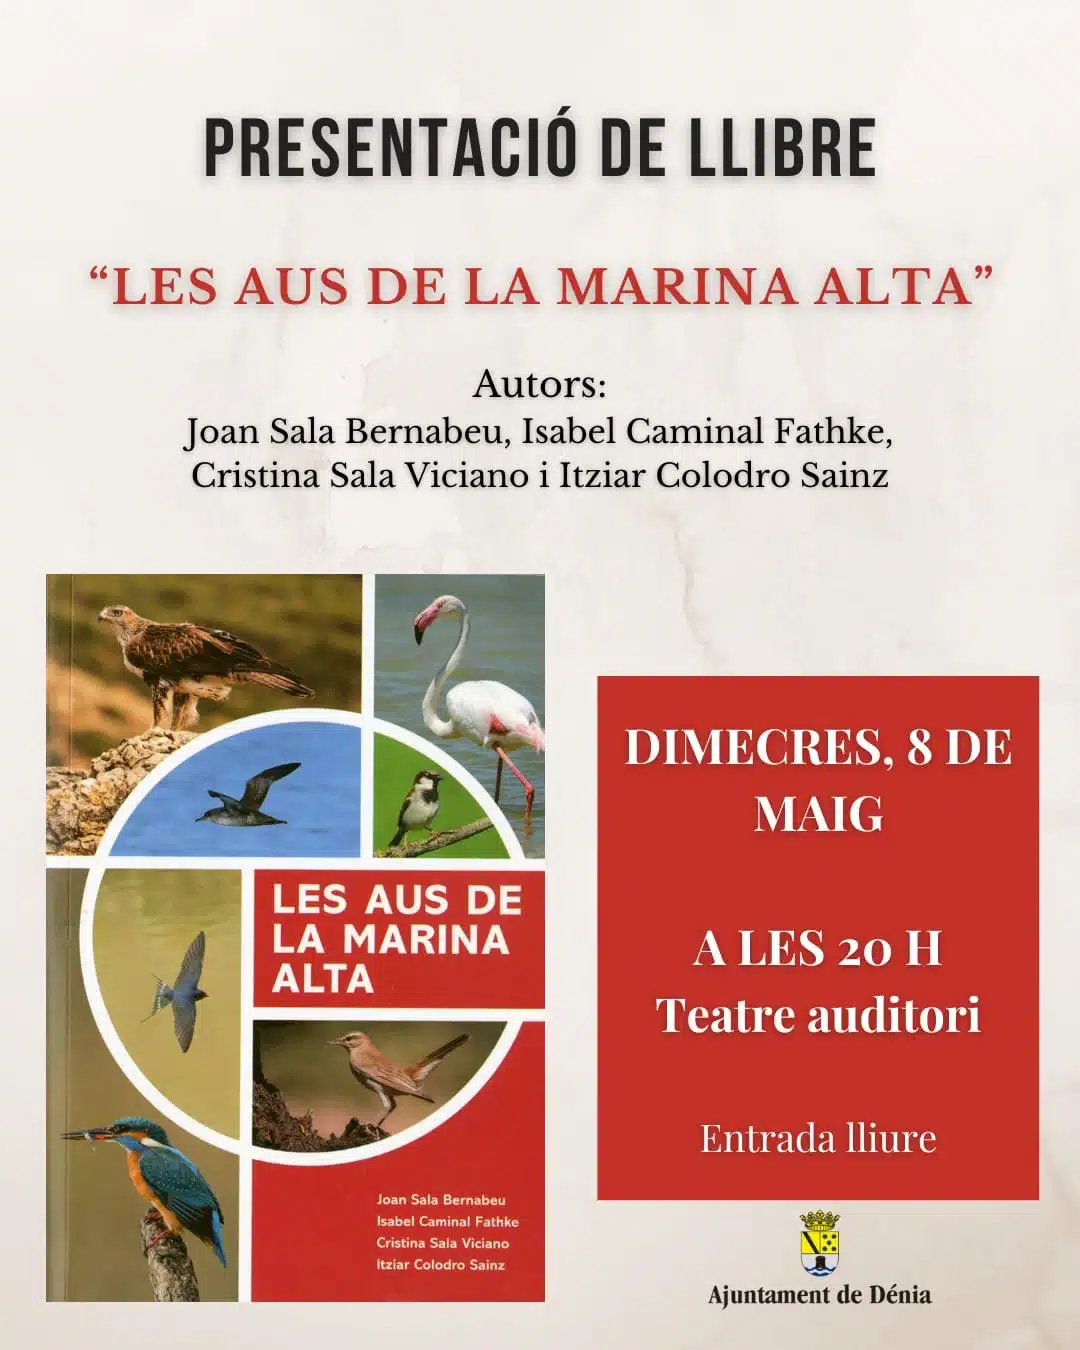 Presentación del libro "LES AUS DE LA MARINA ALTA"